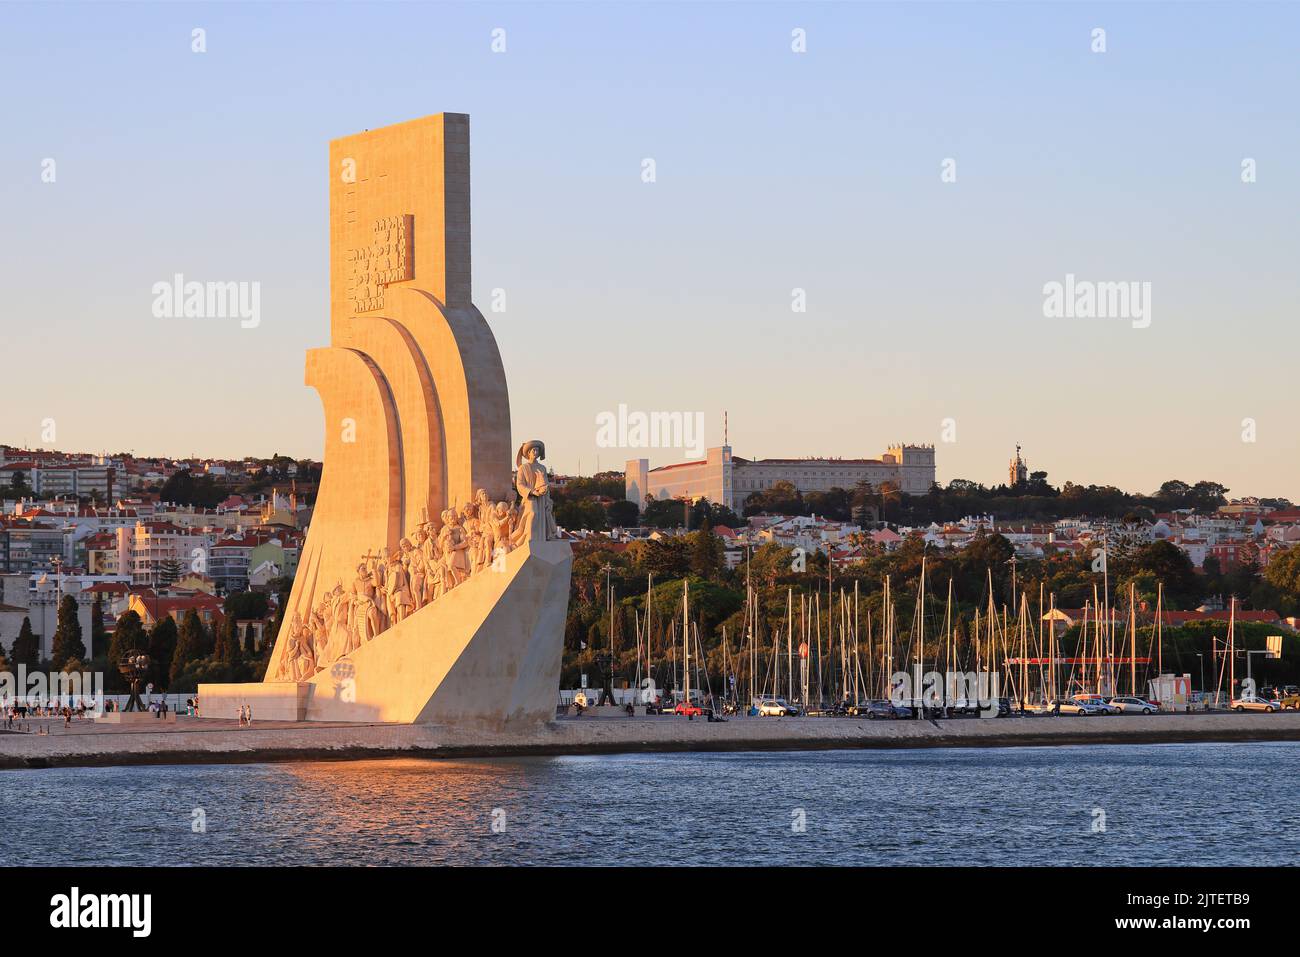 Tramonto a Belém, Lisbona, la capitale del Portogallo. Padrão dos Descobrimentos, monumento alle scoperte visto dal fiume Tago. Foto Stock